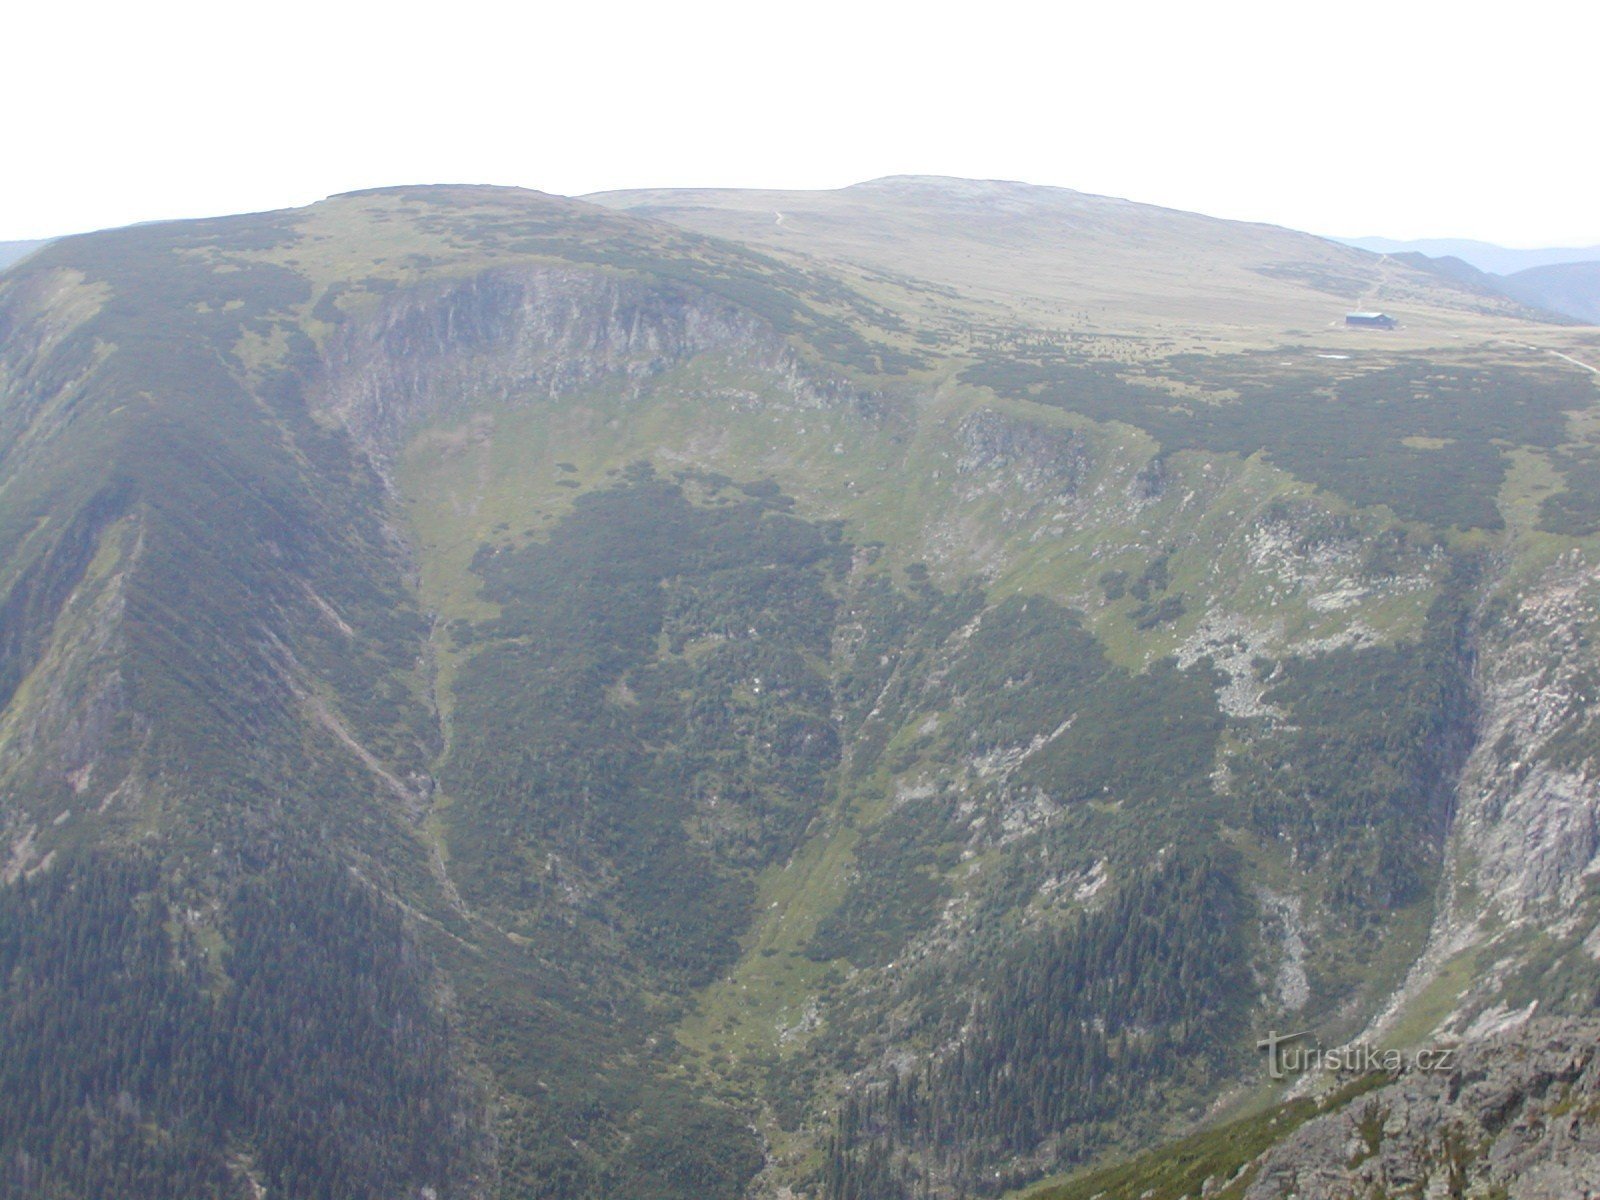 Obrí důl and Studniční hora